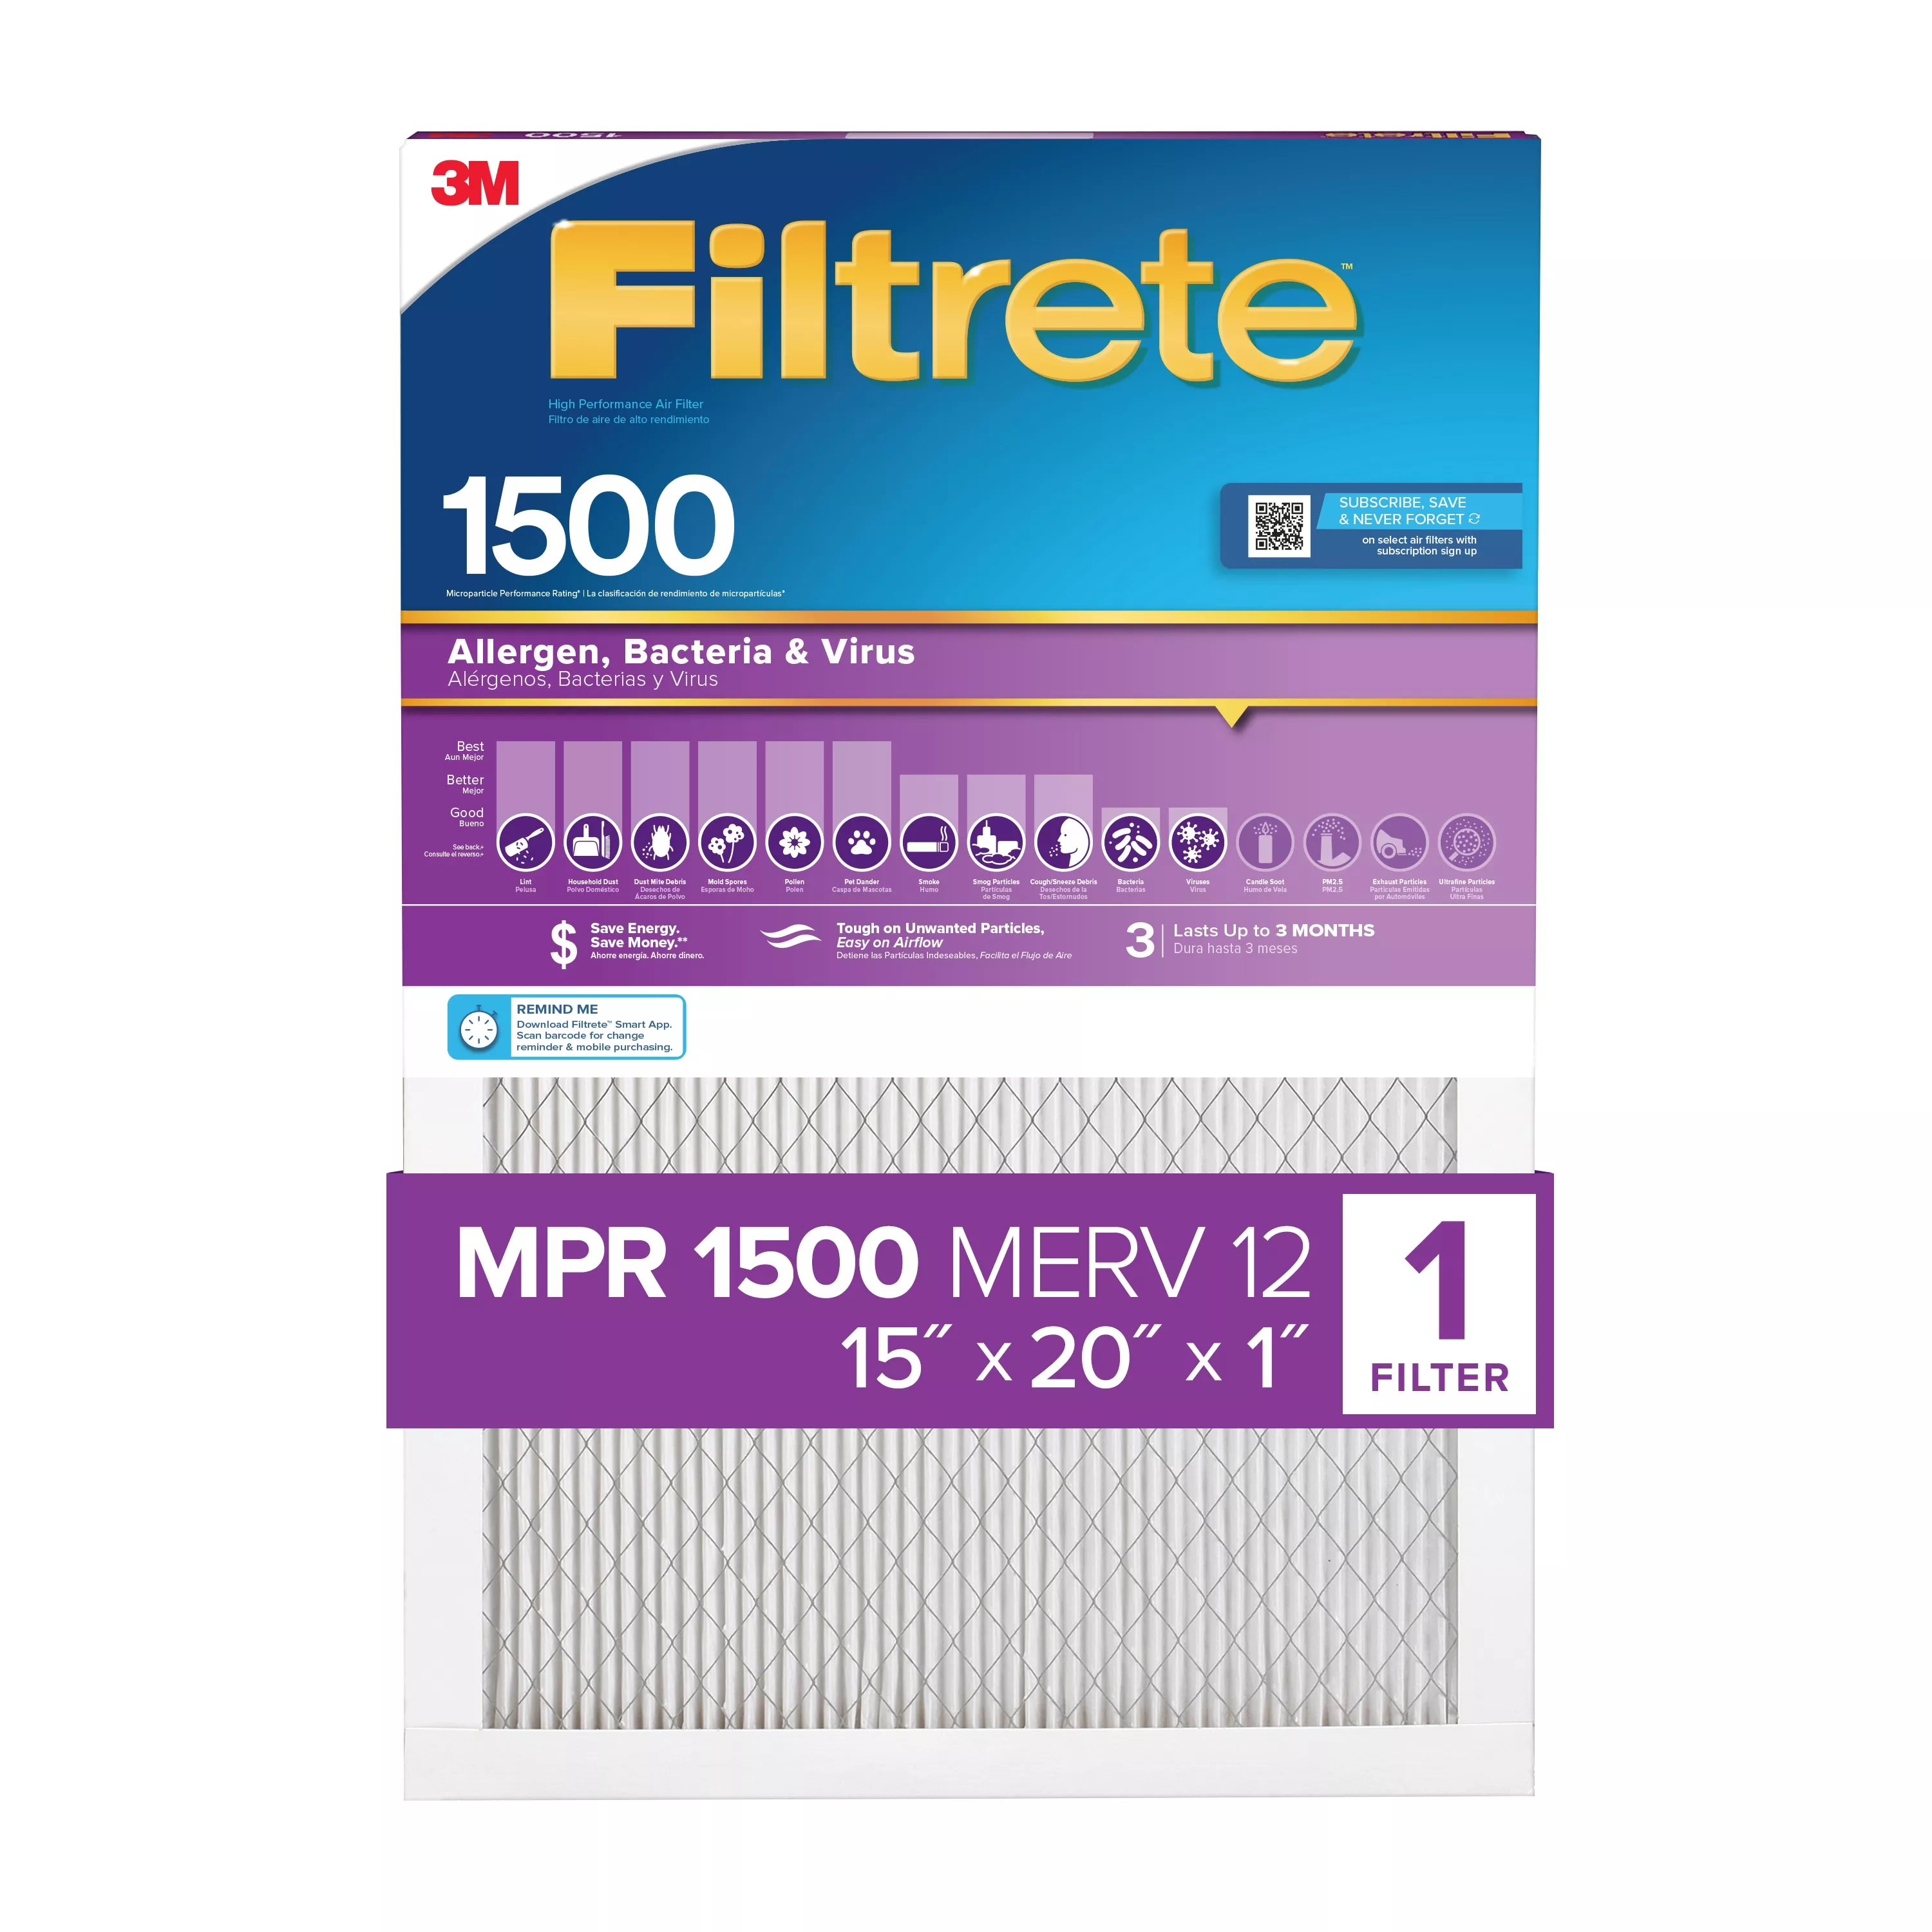 Filtrete™ High Performance Air Filter 1500 MPR 2006DC-4, 15 in x 20 in x 1 in (38.1 cm x 50.8 cm x 2.5 cm)